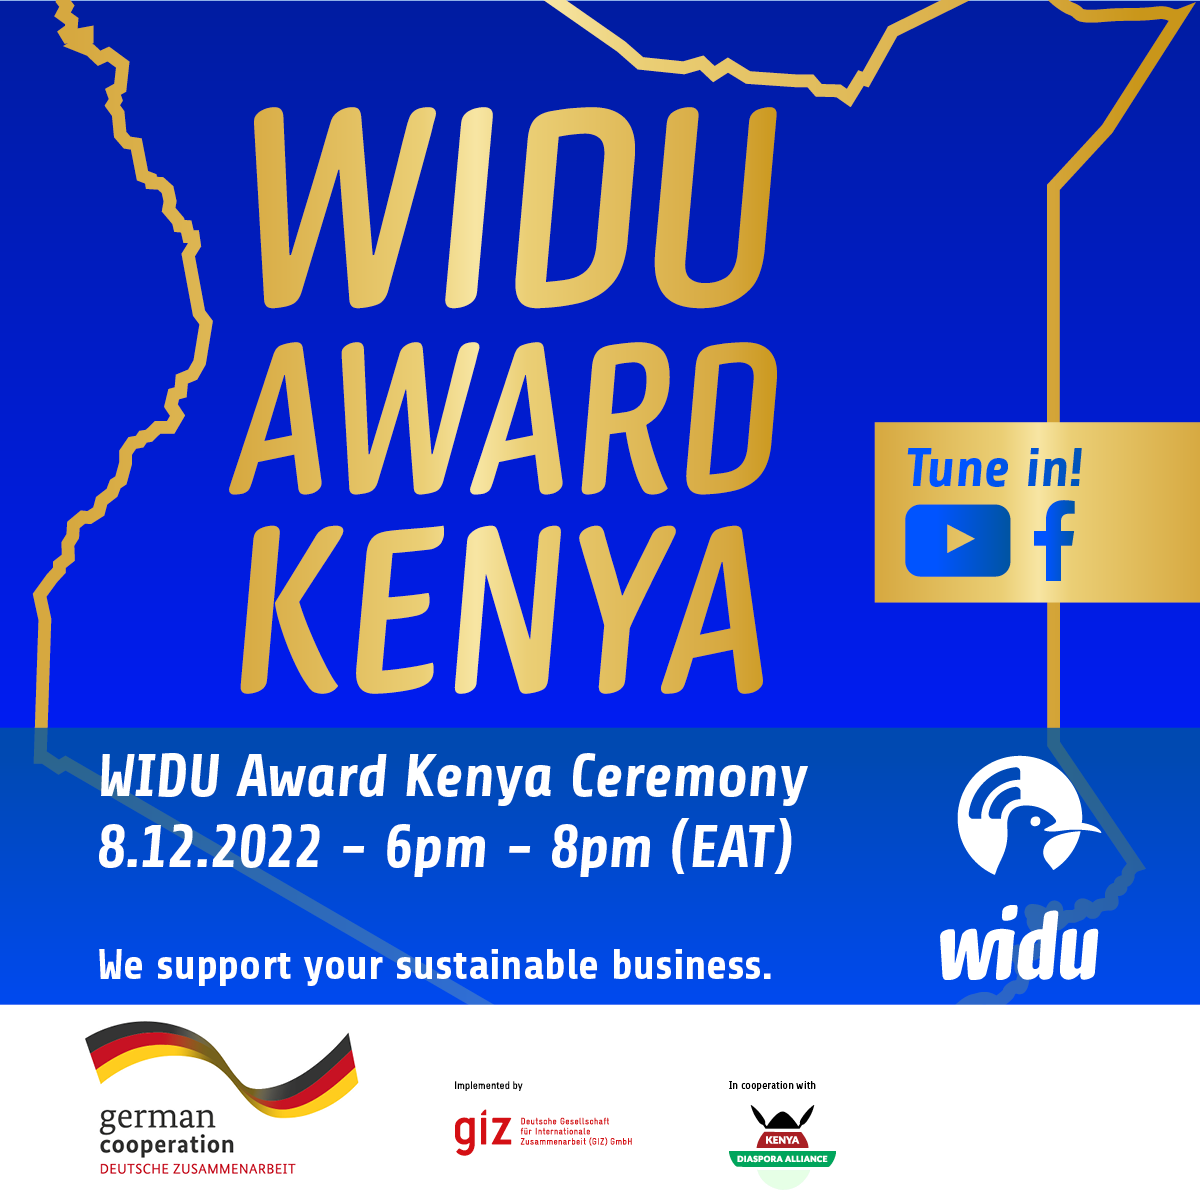 WIDU Award Kenya takes place in Nairobi